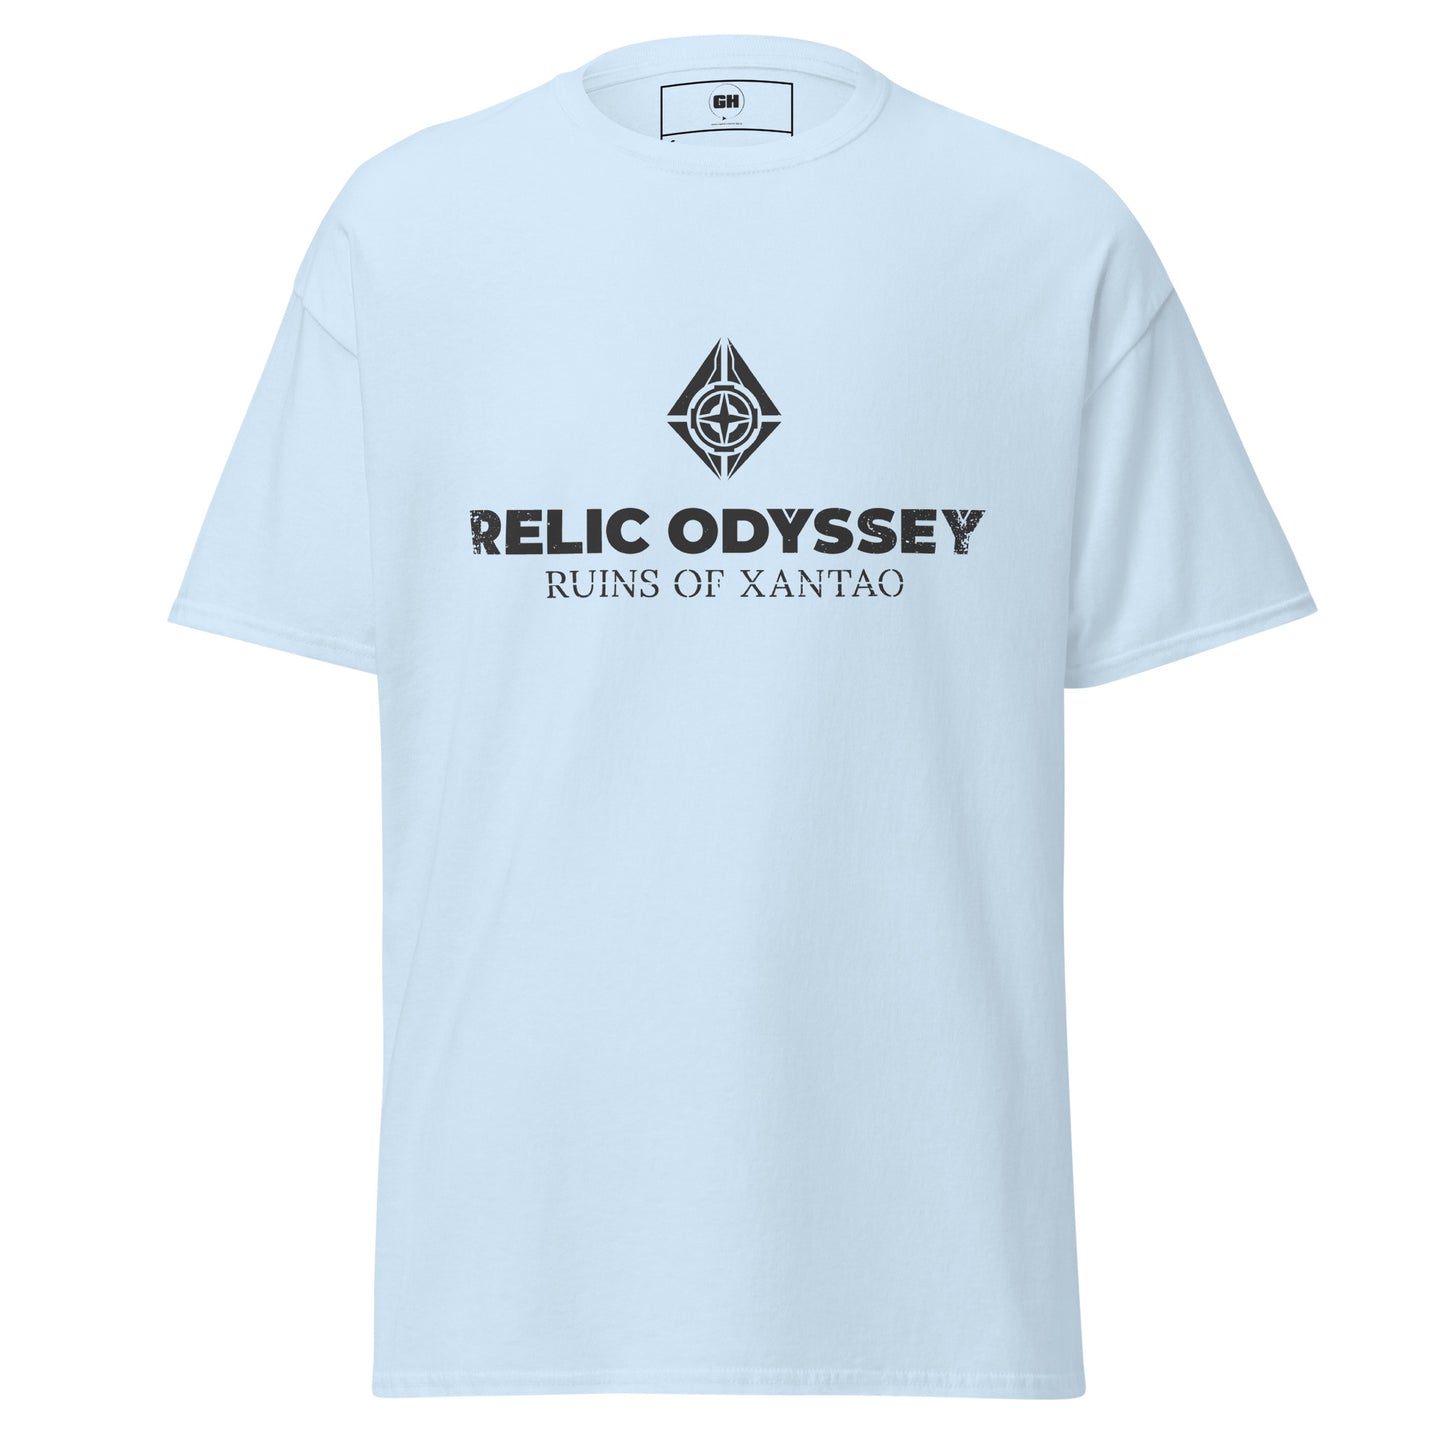 Relic Odyssey - Men's classic tee